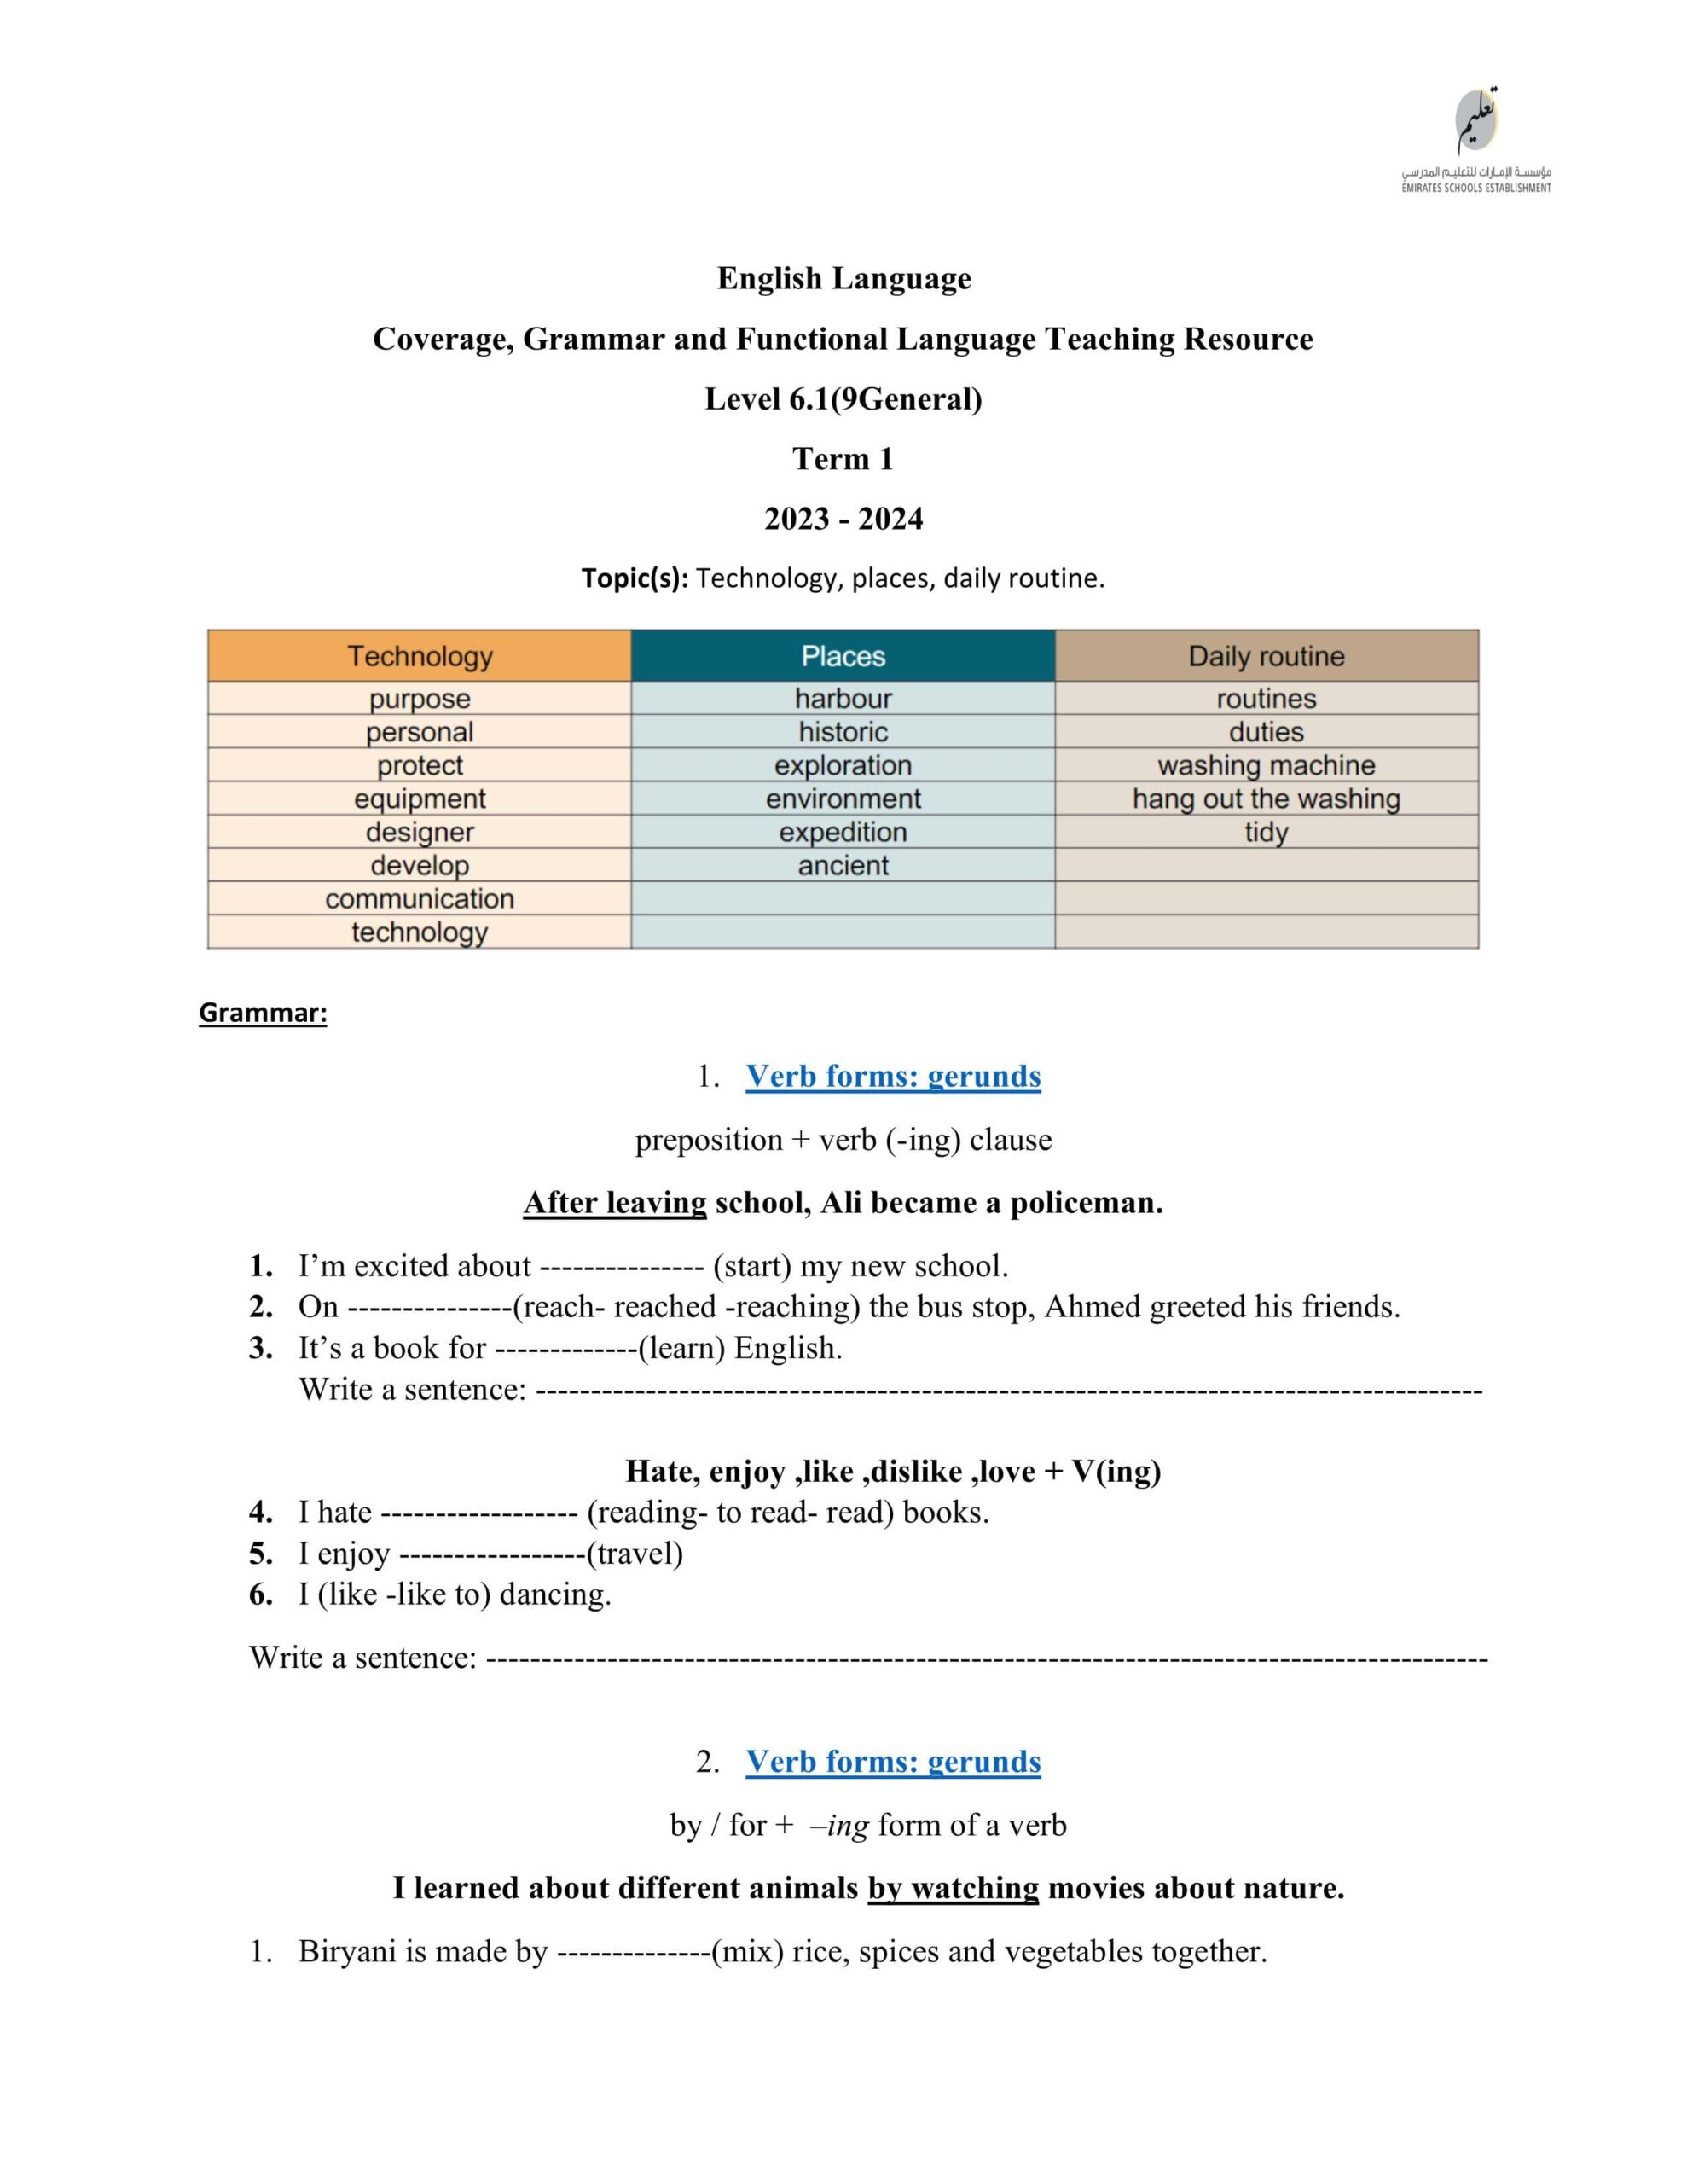 مراجعة Grammar and Functional Language Teaching Resource اللغة الإنجليزي الصف التاسع 